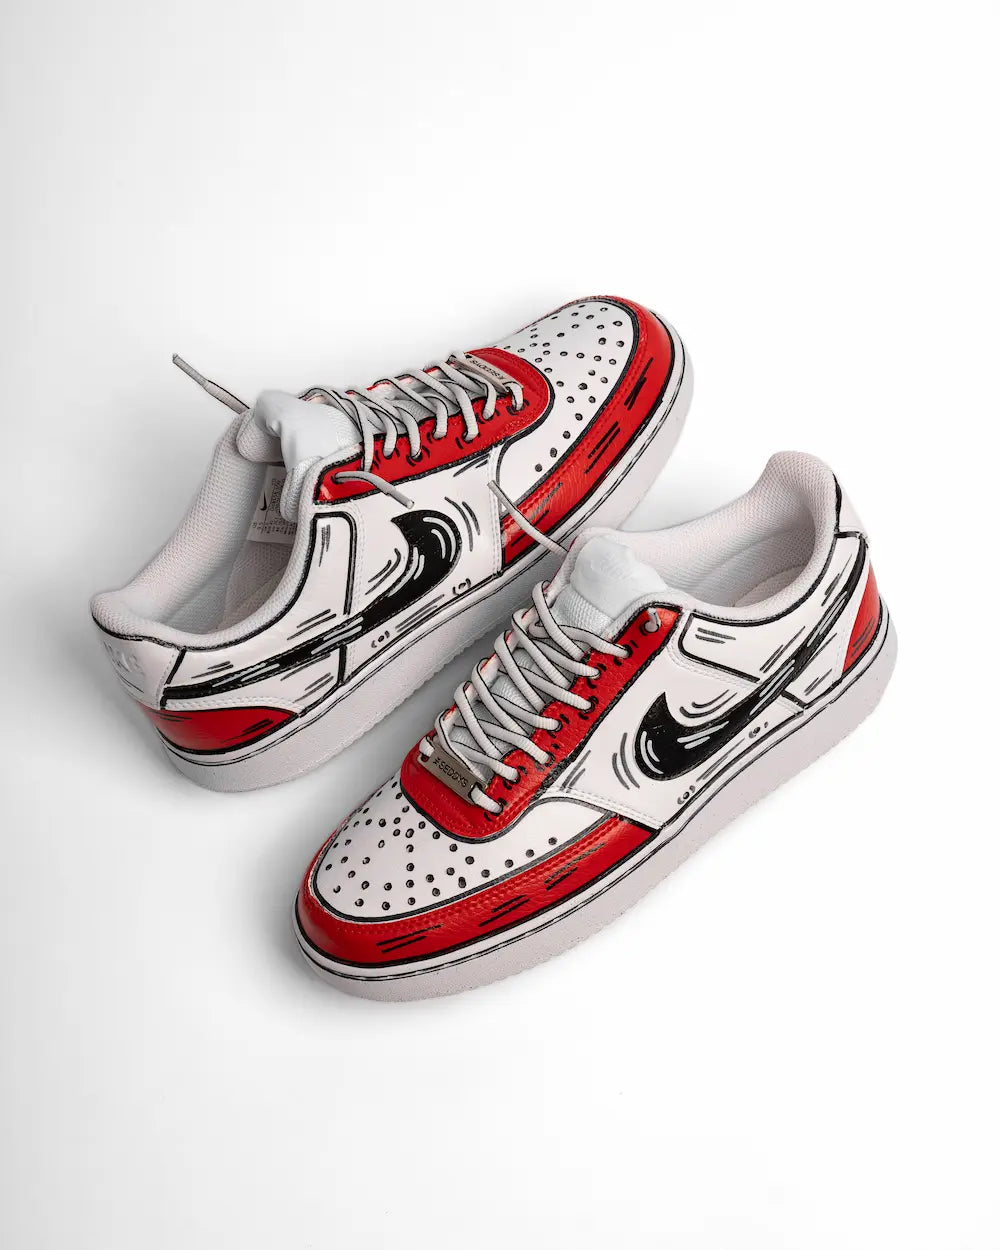 Comics Red & Black su Nike Court Vision, sneaker dipinta a mano effetto fumetto in tonalità rosso e nero